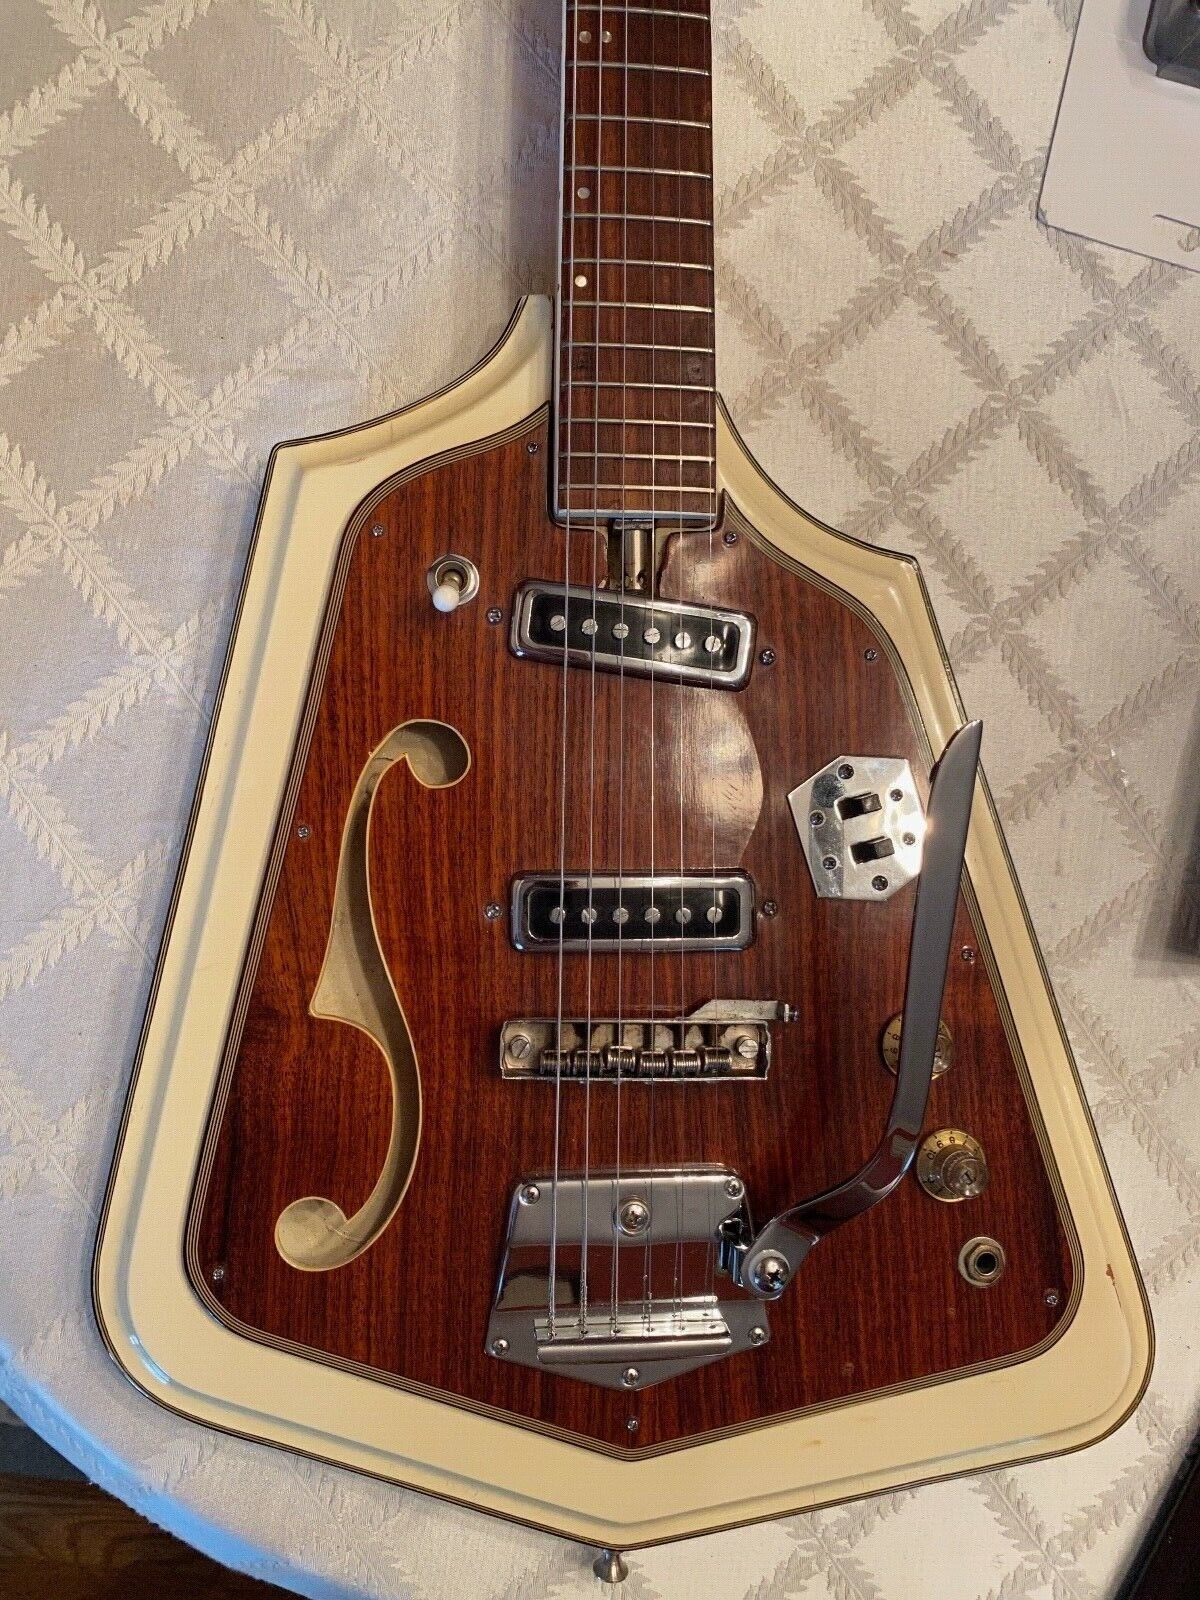 Domino California Rebel Guitar from 1967